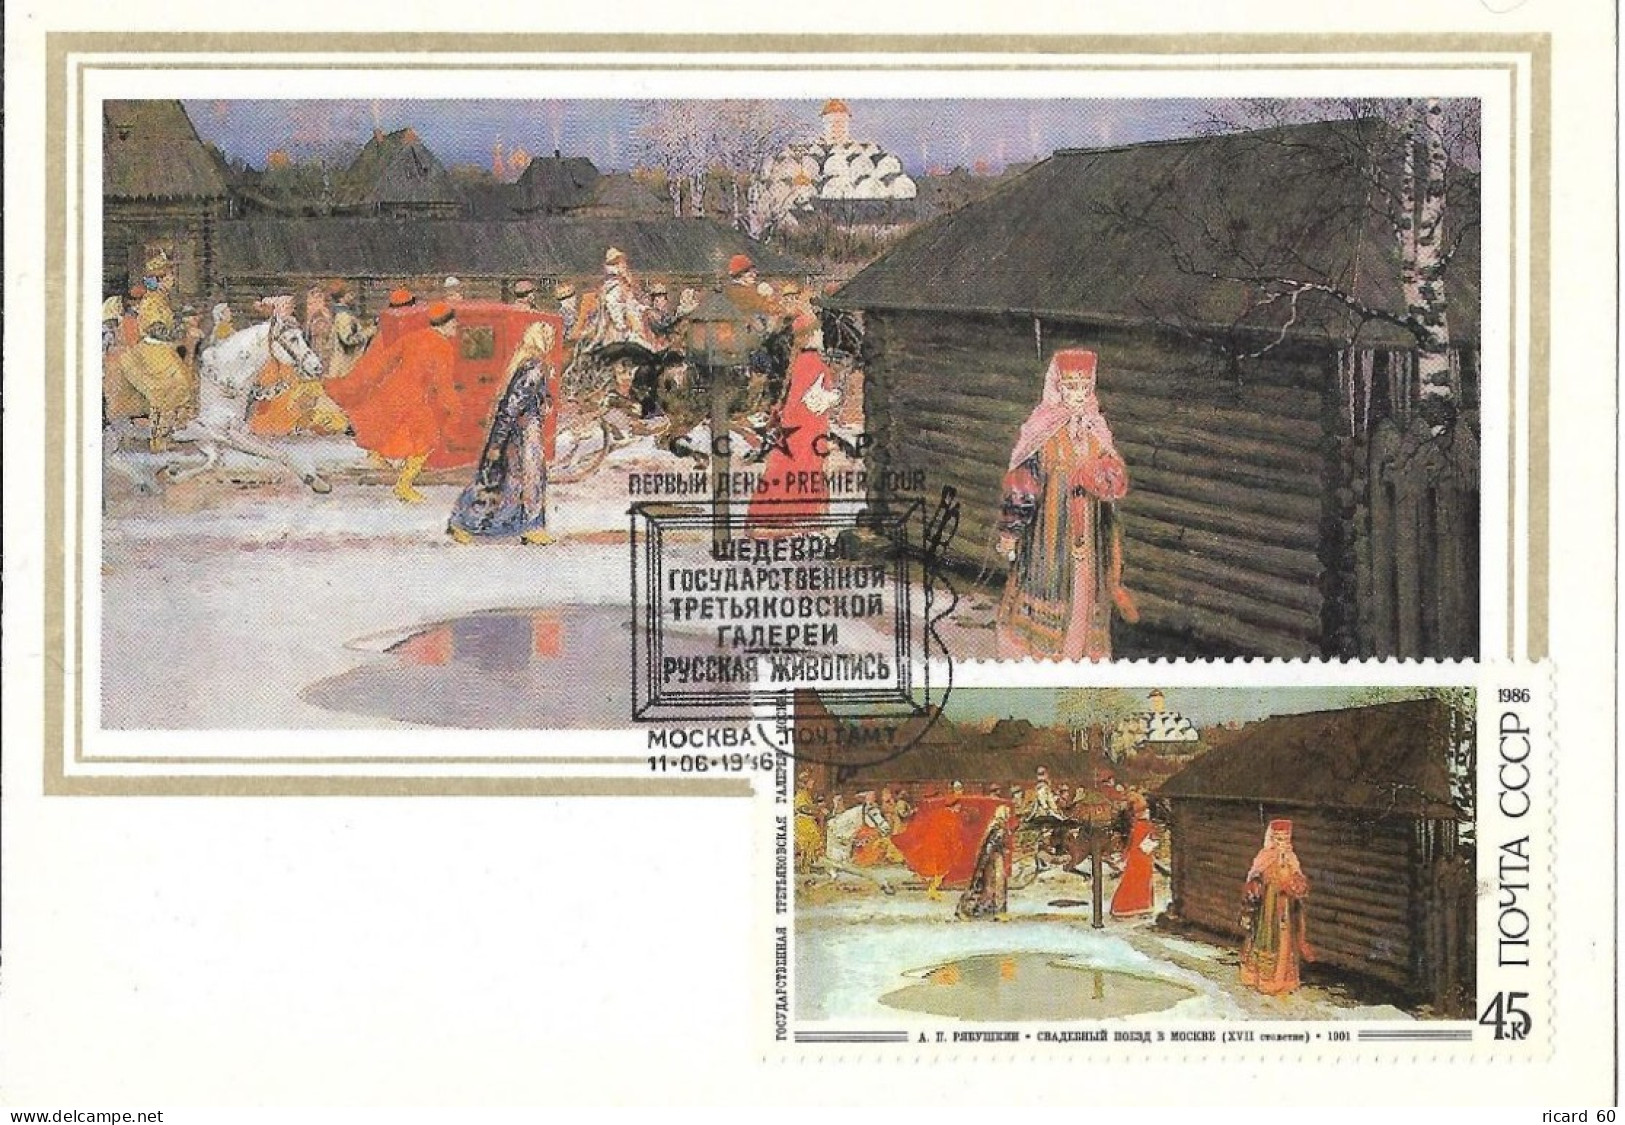 Carte Maximum Fdc URSS, 1986, N° 5320 YT, Tableau De Riabouchkine, Procession De Mariage Au 17è Siècle - Cartes Maximum